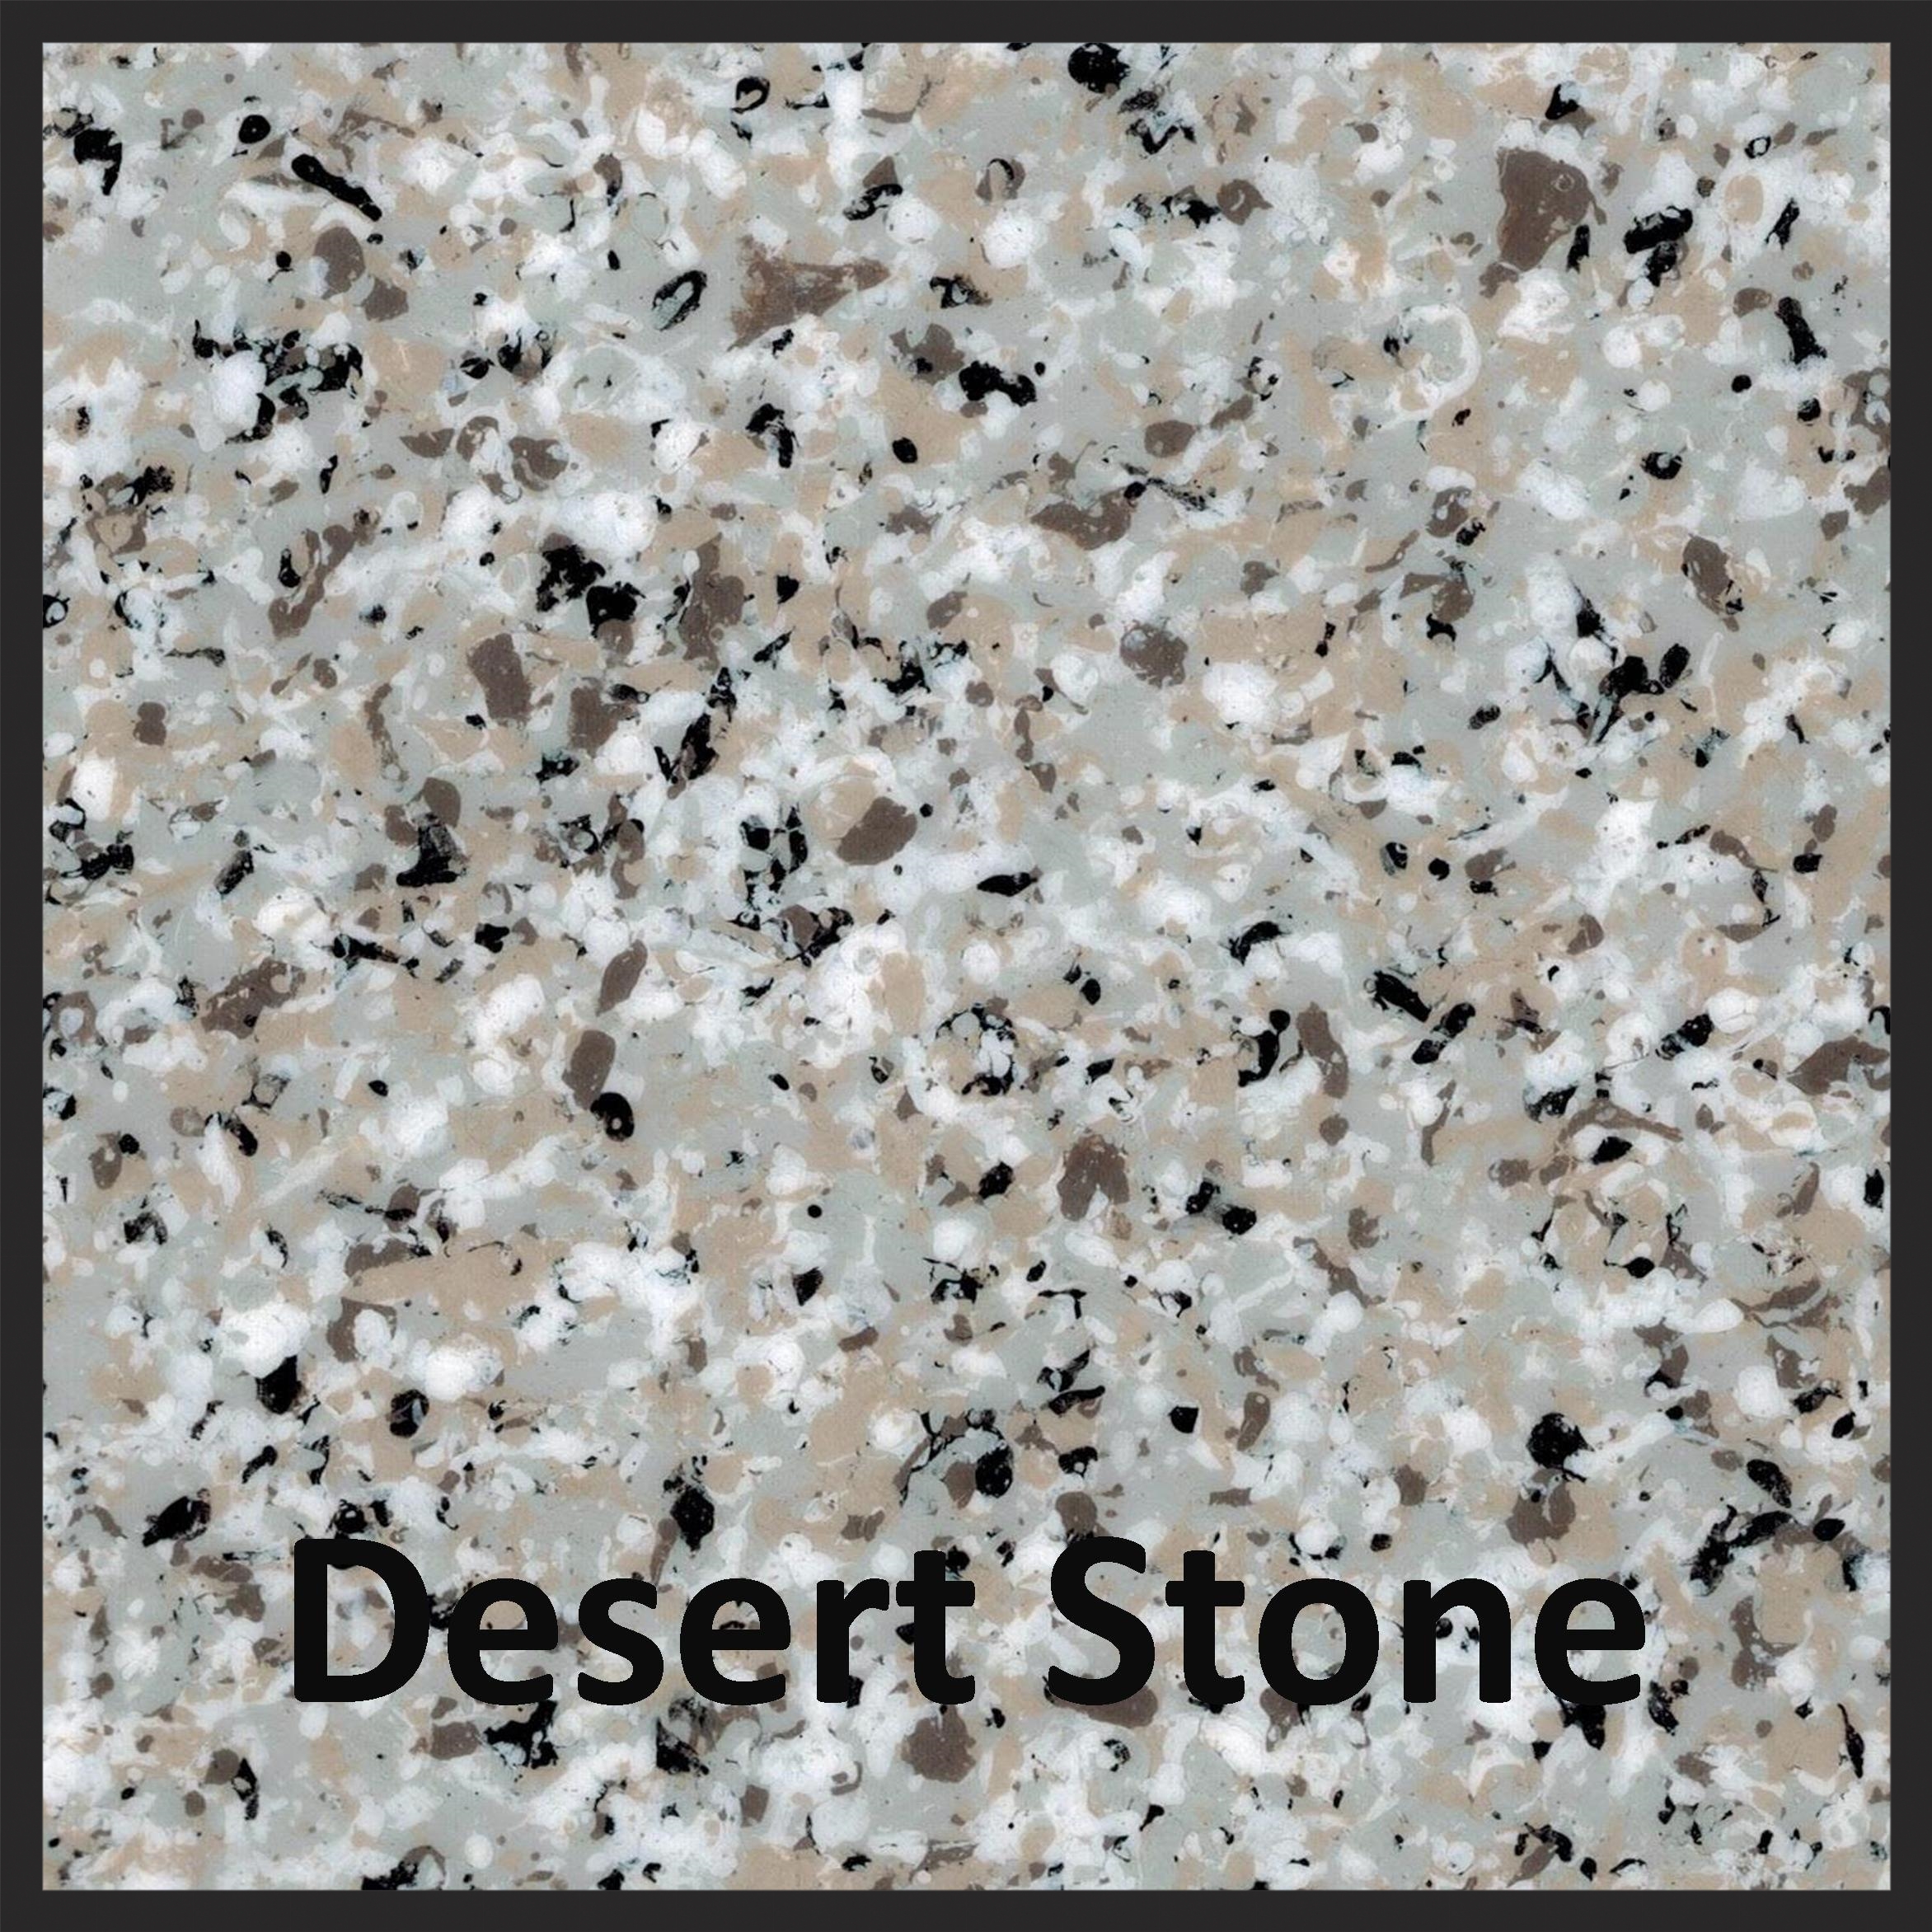 desert-stone-label.jpg